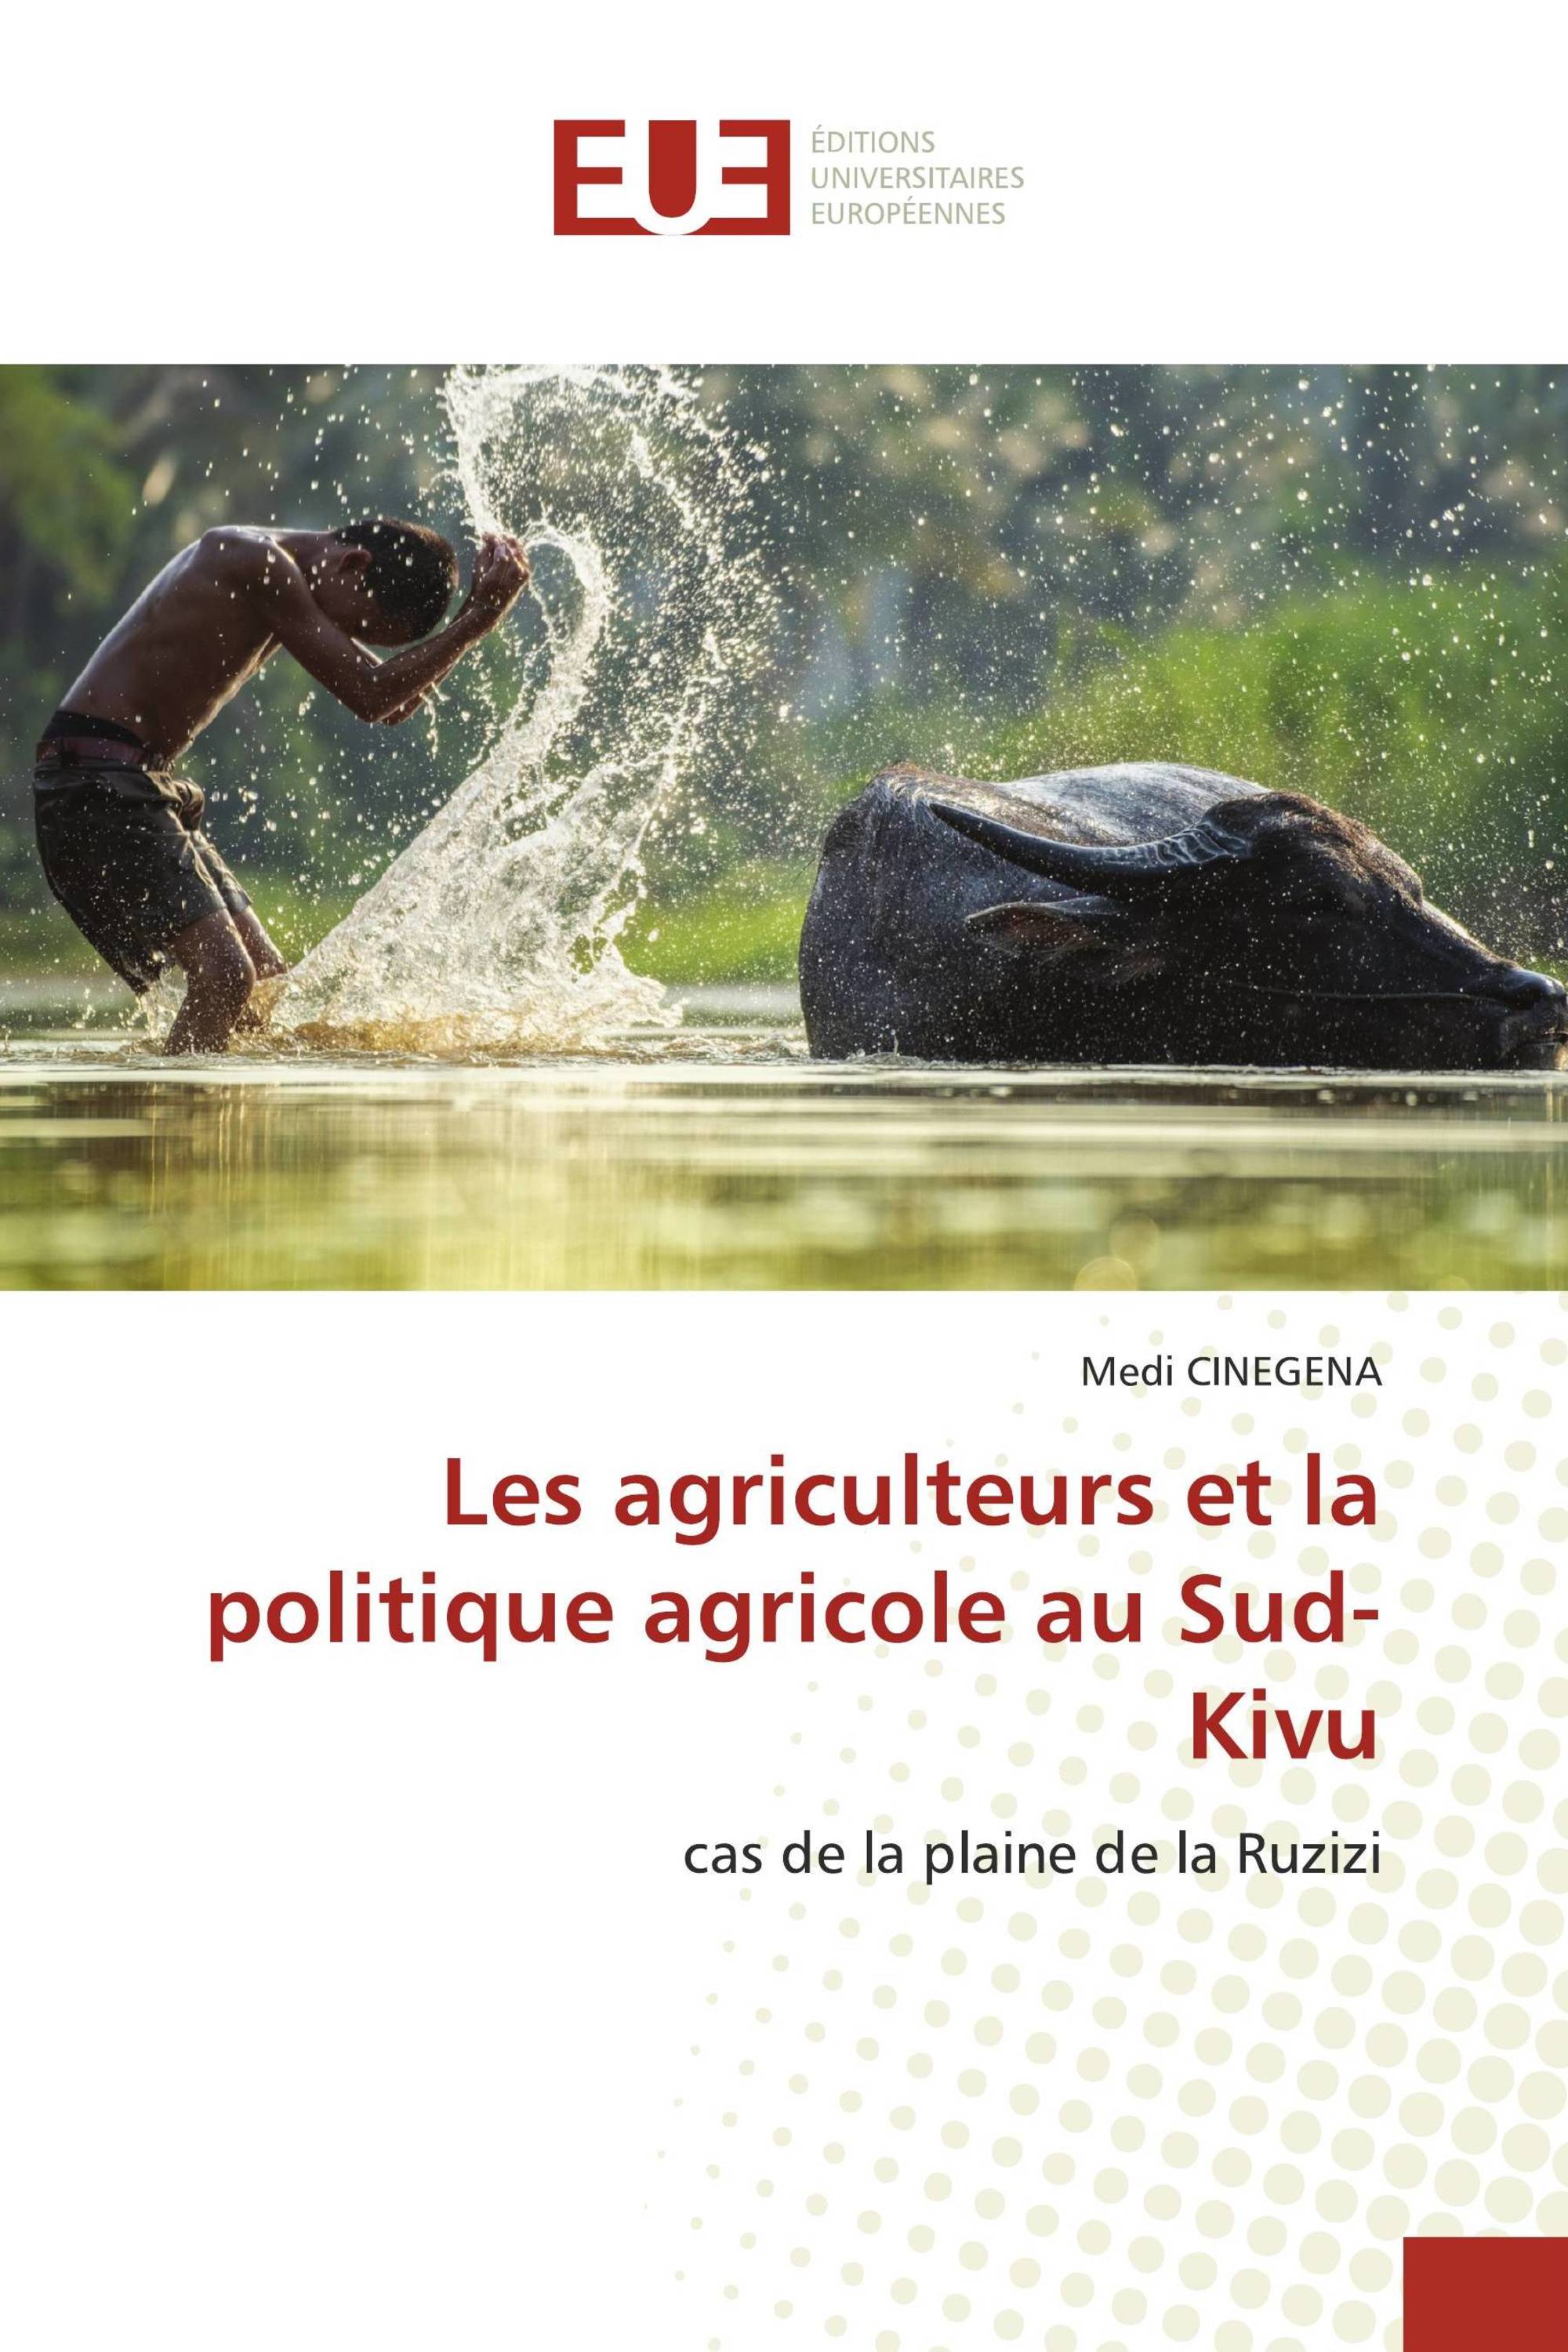 Les agriculteurs et la politique agricole au Sud-Kivu